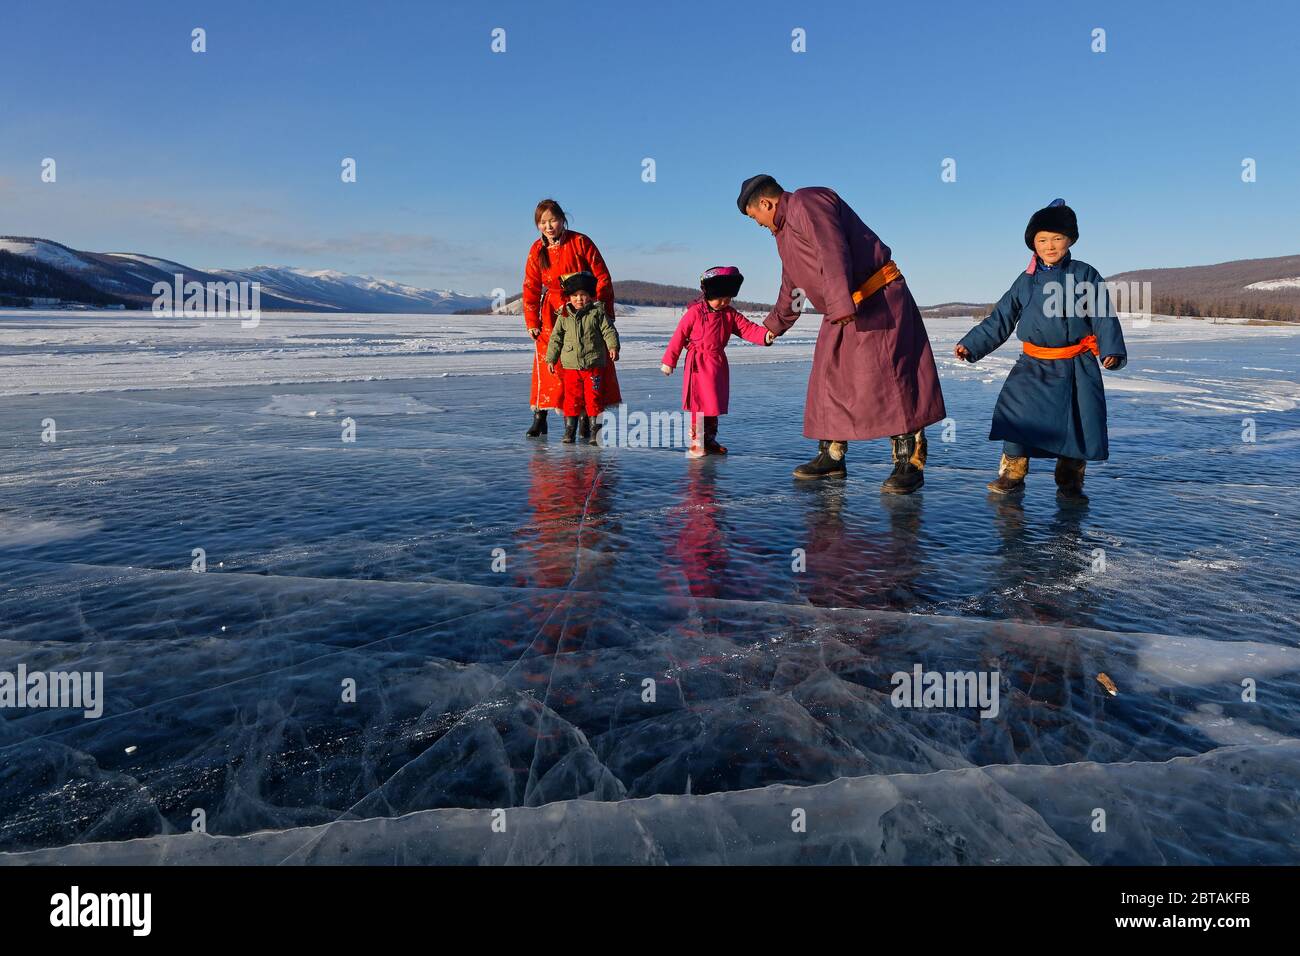 KHATGAL, MONGOLIE, 2 mars 2020 : UNE famille mongole, vêtue de vêtements traditionnels, marche sur le lac gelé. Banque D'Images